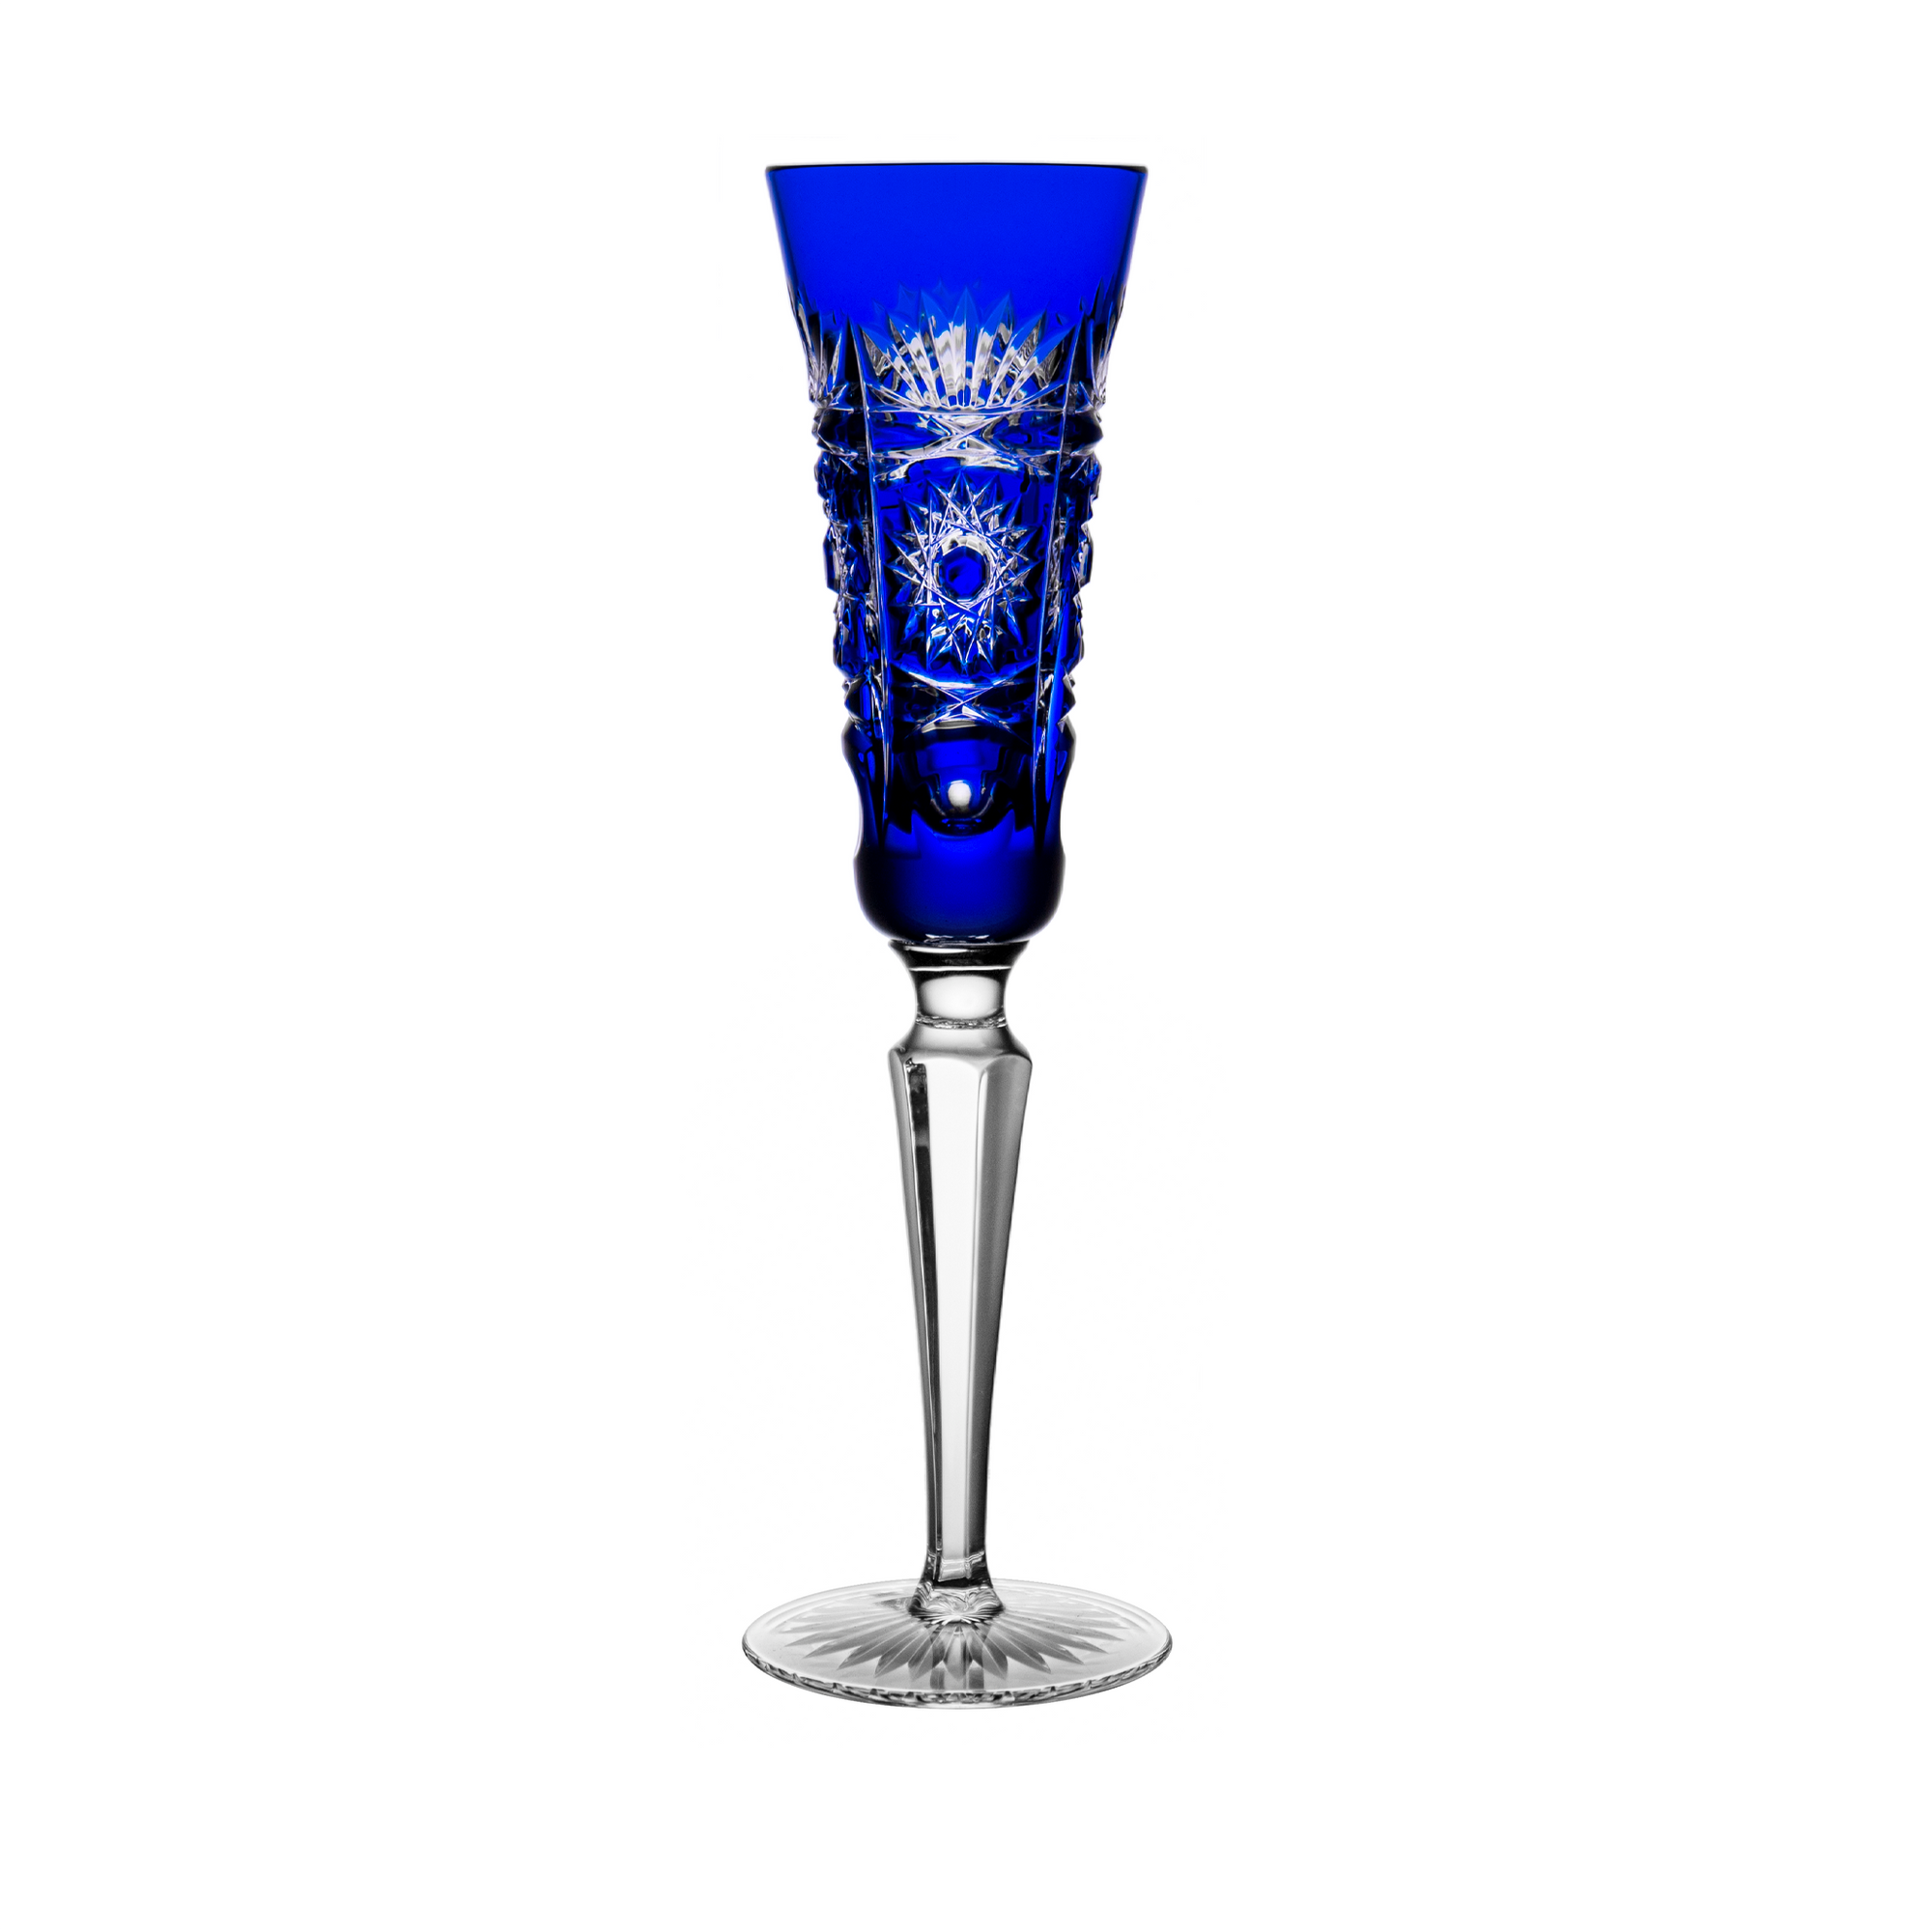 Fabergé Tsarevitch Blue Champagne Flute